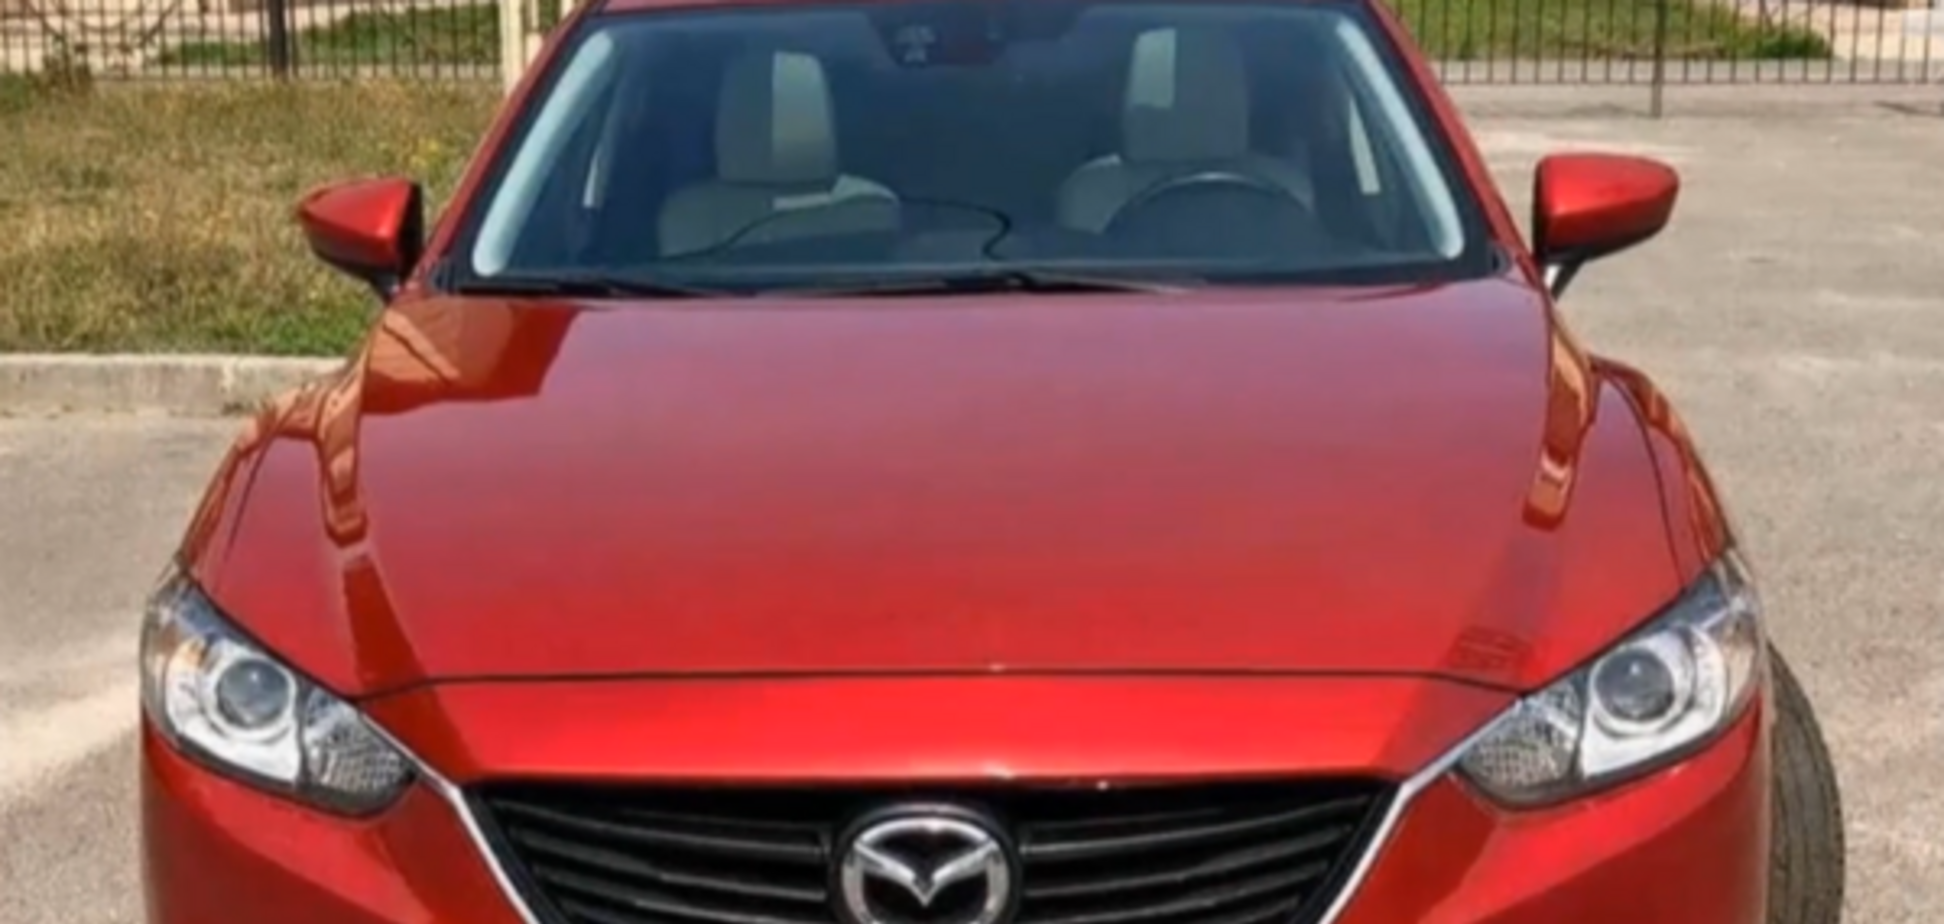 Поліцейські викрали в киянина Mazda: з'явилася реакція ДБР